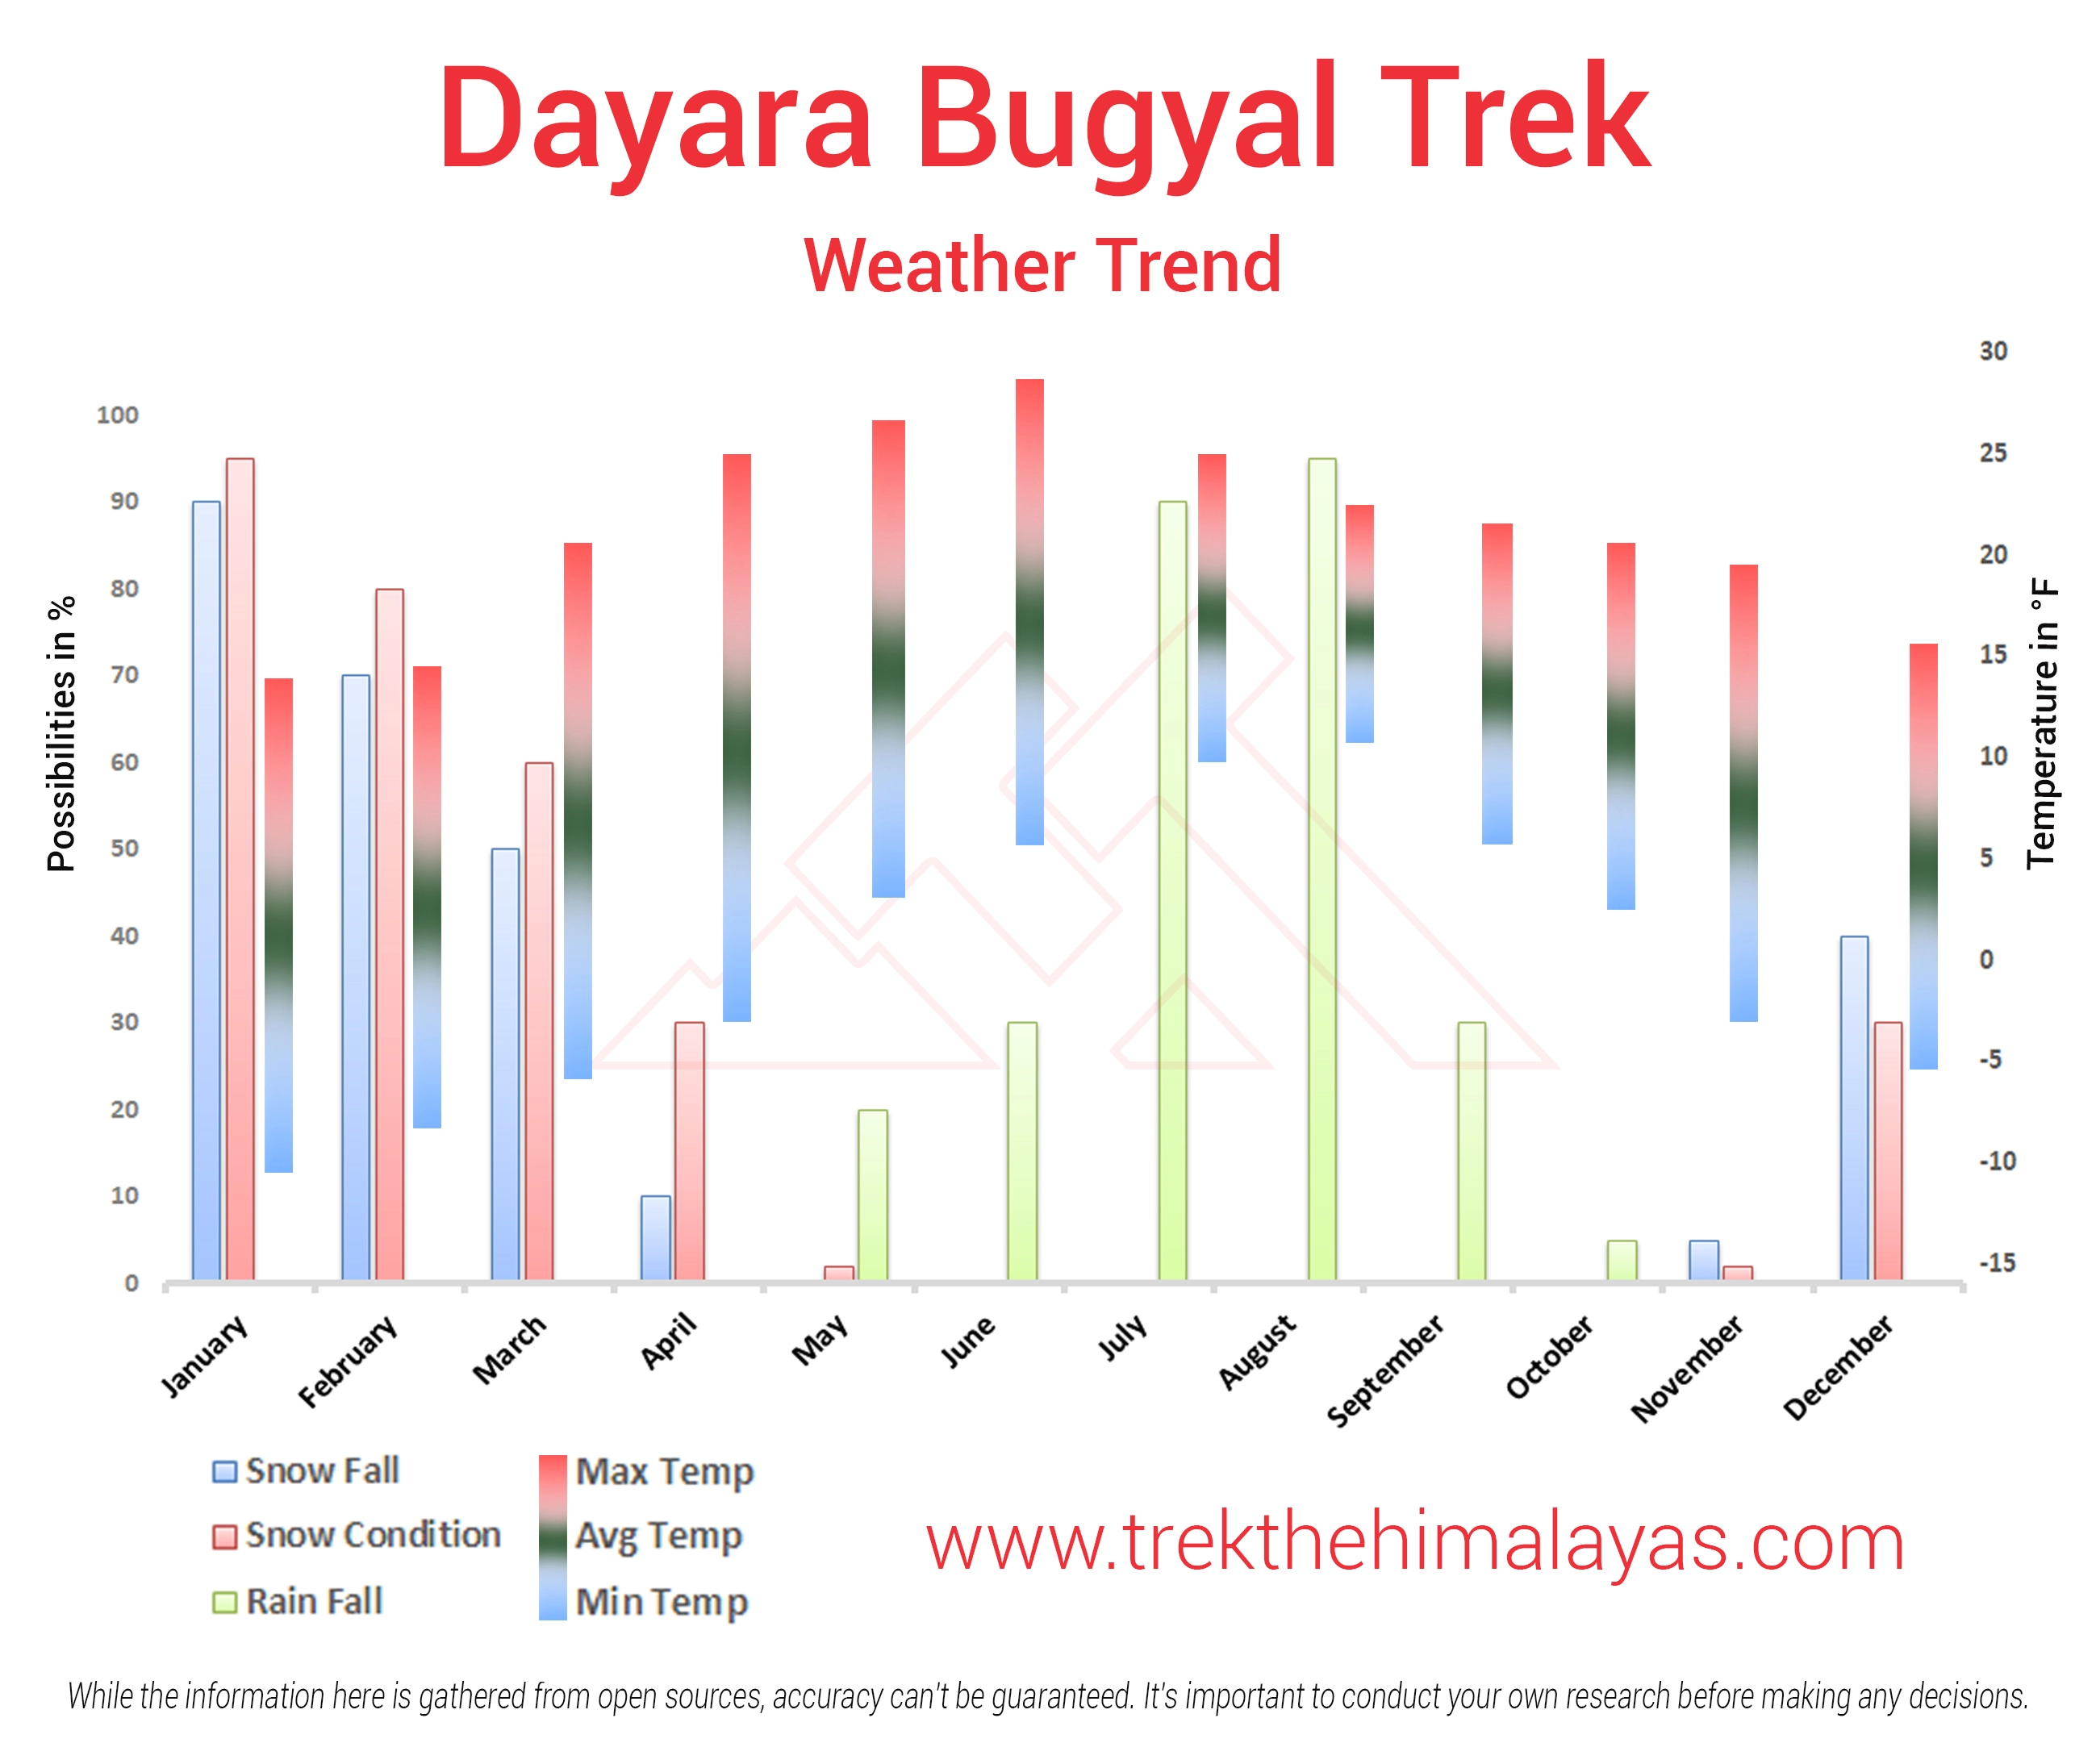 Dayara Bugyal Trek Maps